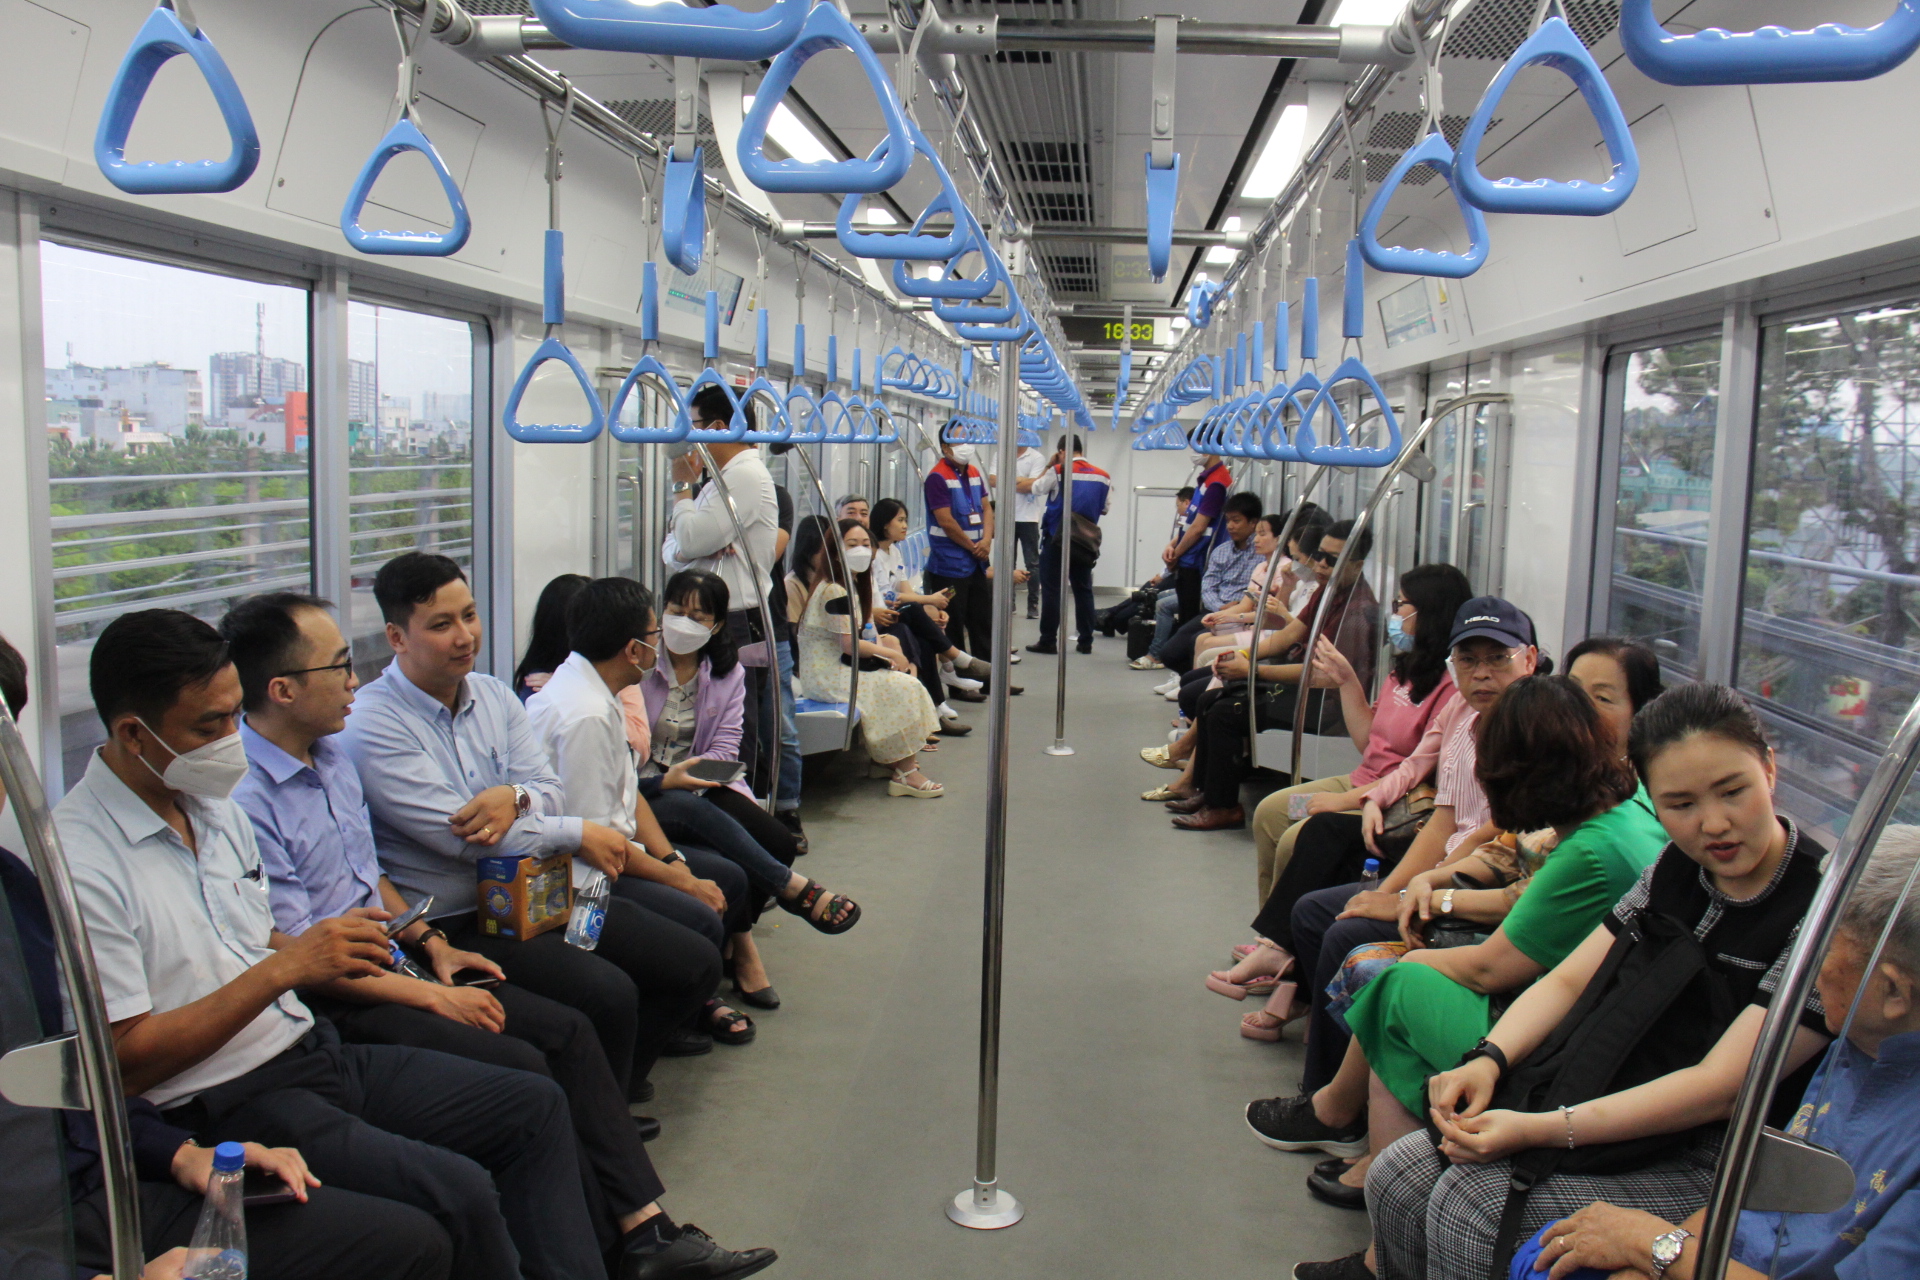 Metro số 1 chở gần 2.000 khách/ngày, chạy 20 phút từ Dĩ An đến Thảo Điền - Ảnh 4.